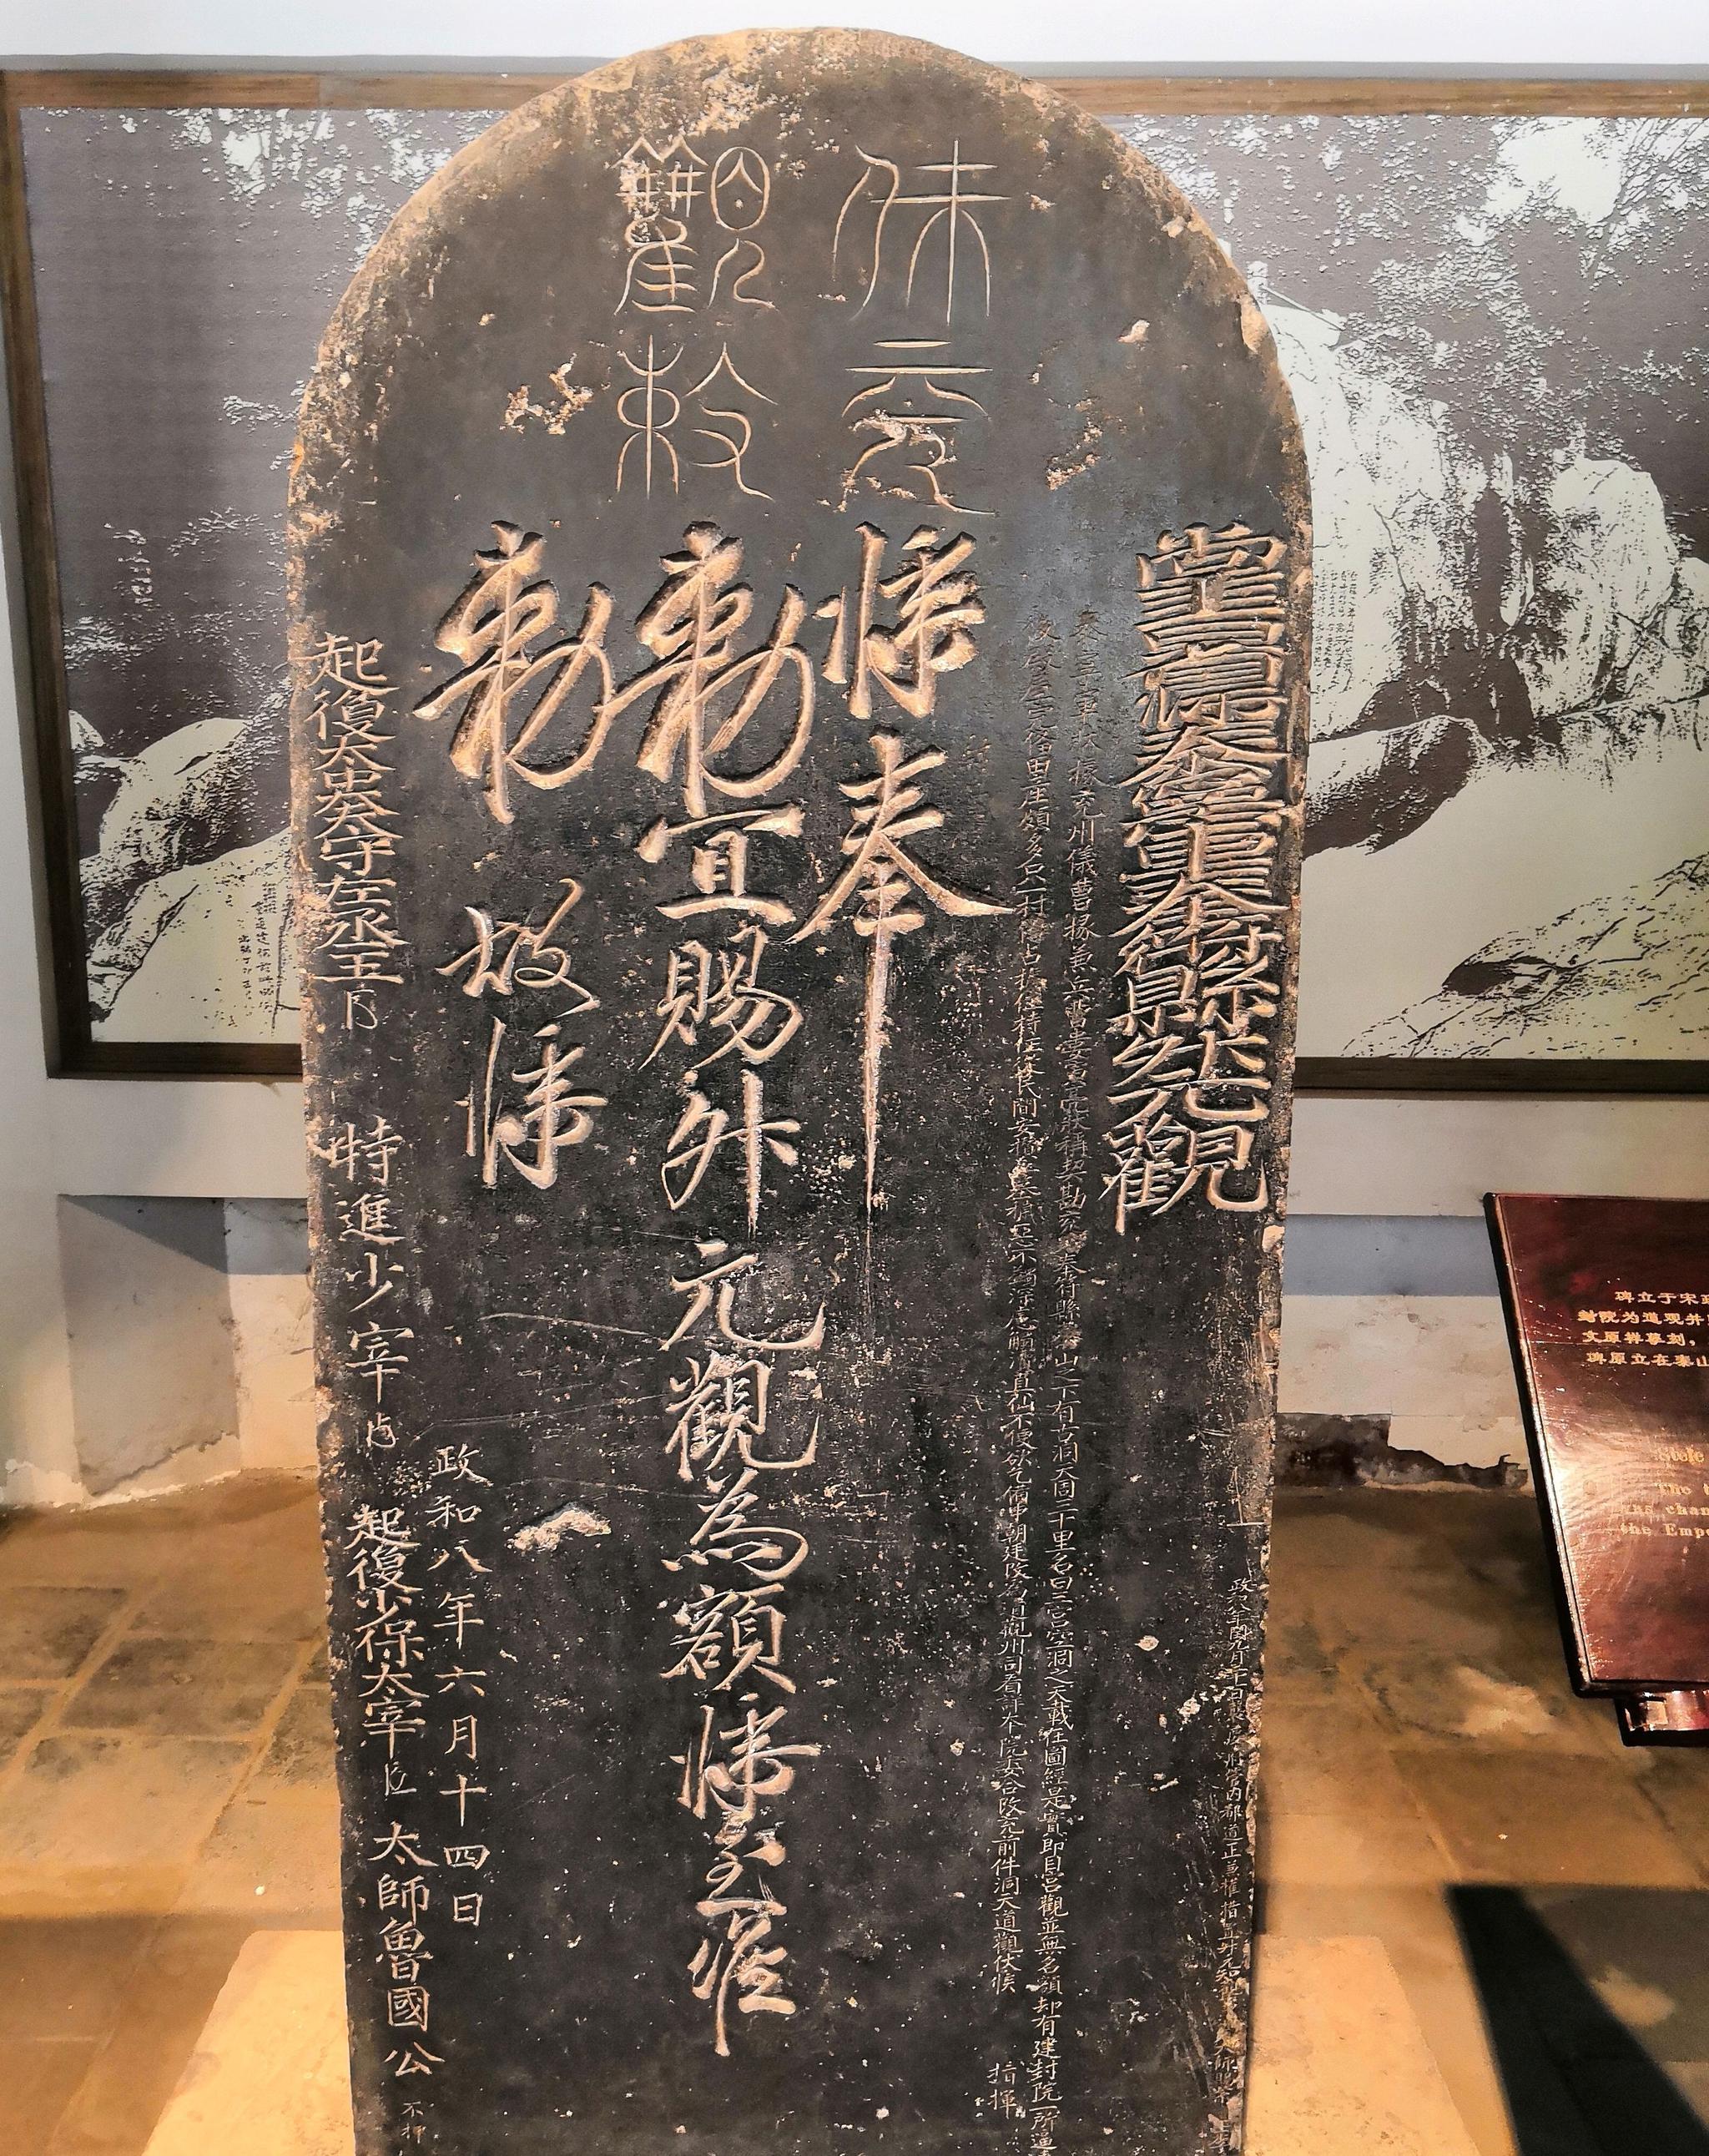 【雅昌带你看展览】西安碑林走一遍 走过中国书法史和思想史_独家_雅昌新闻